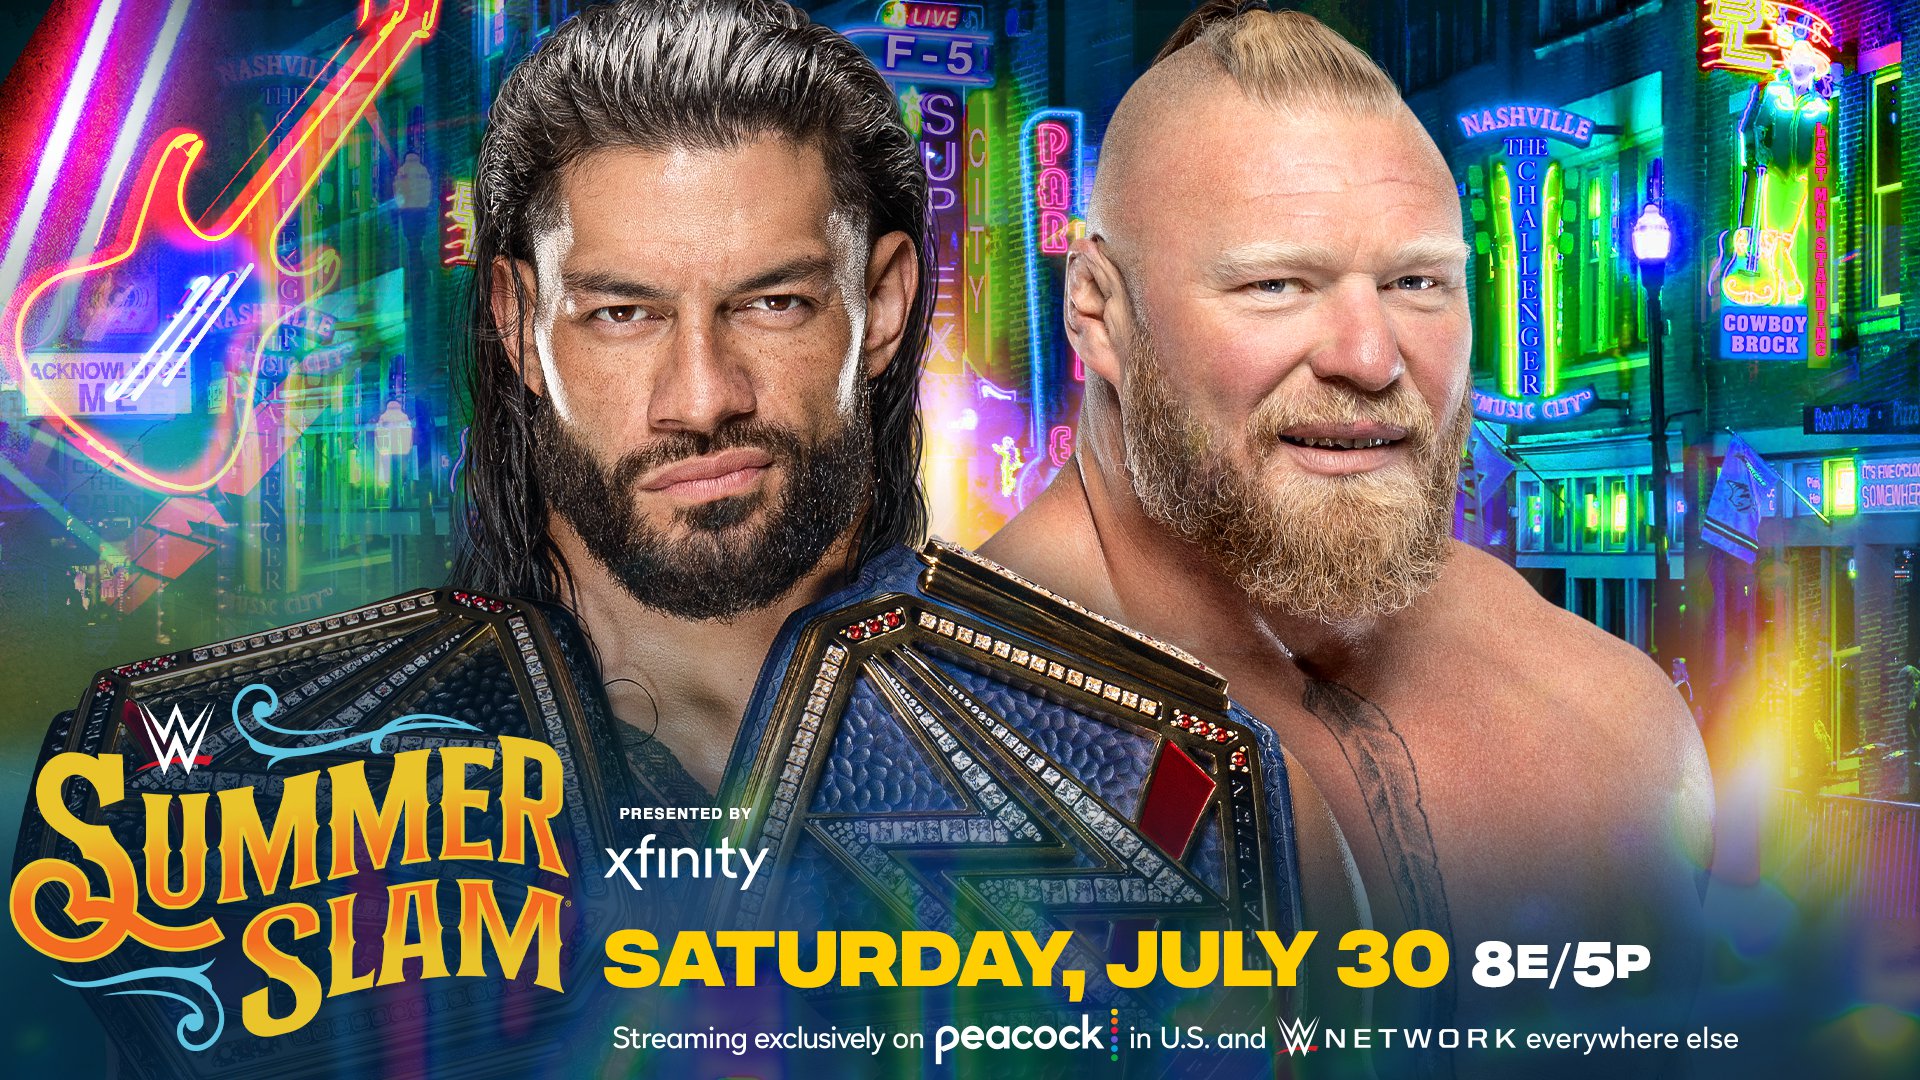 WWE SummerSlam Brock Lesnar vs Roman Reigns